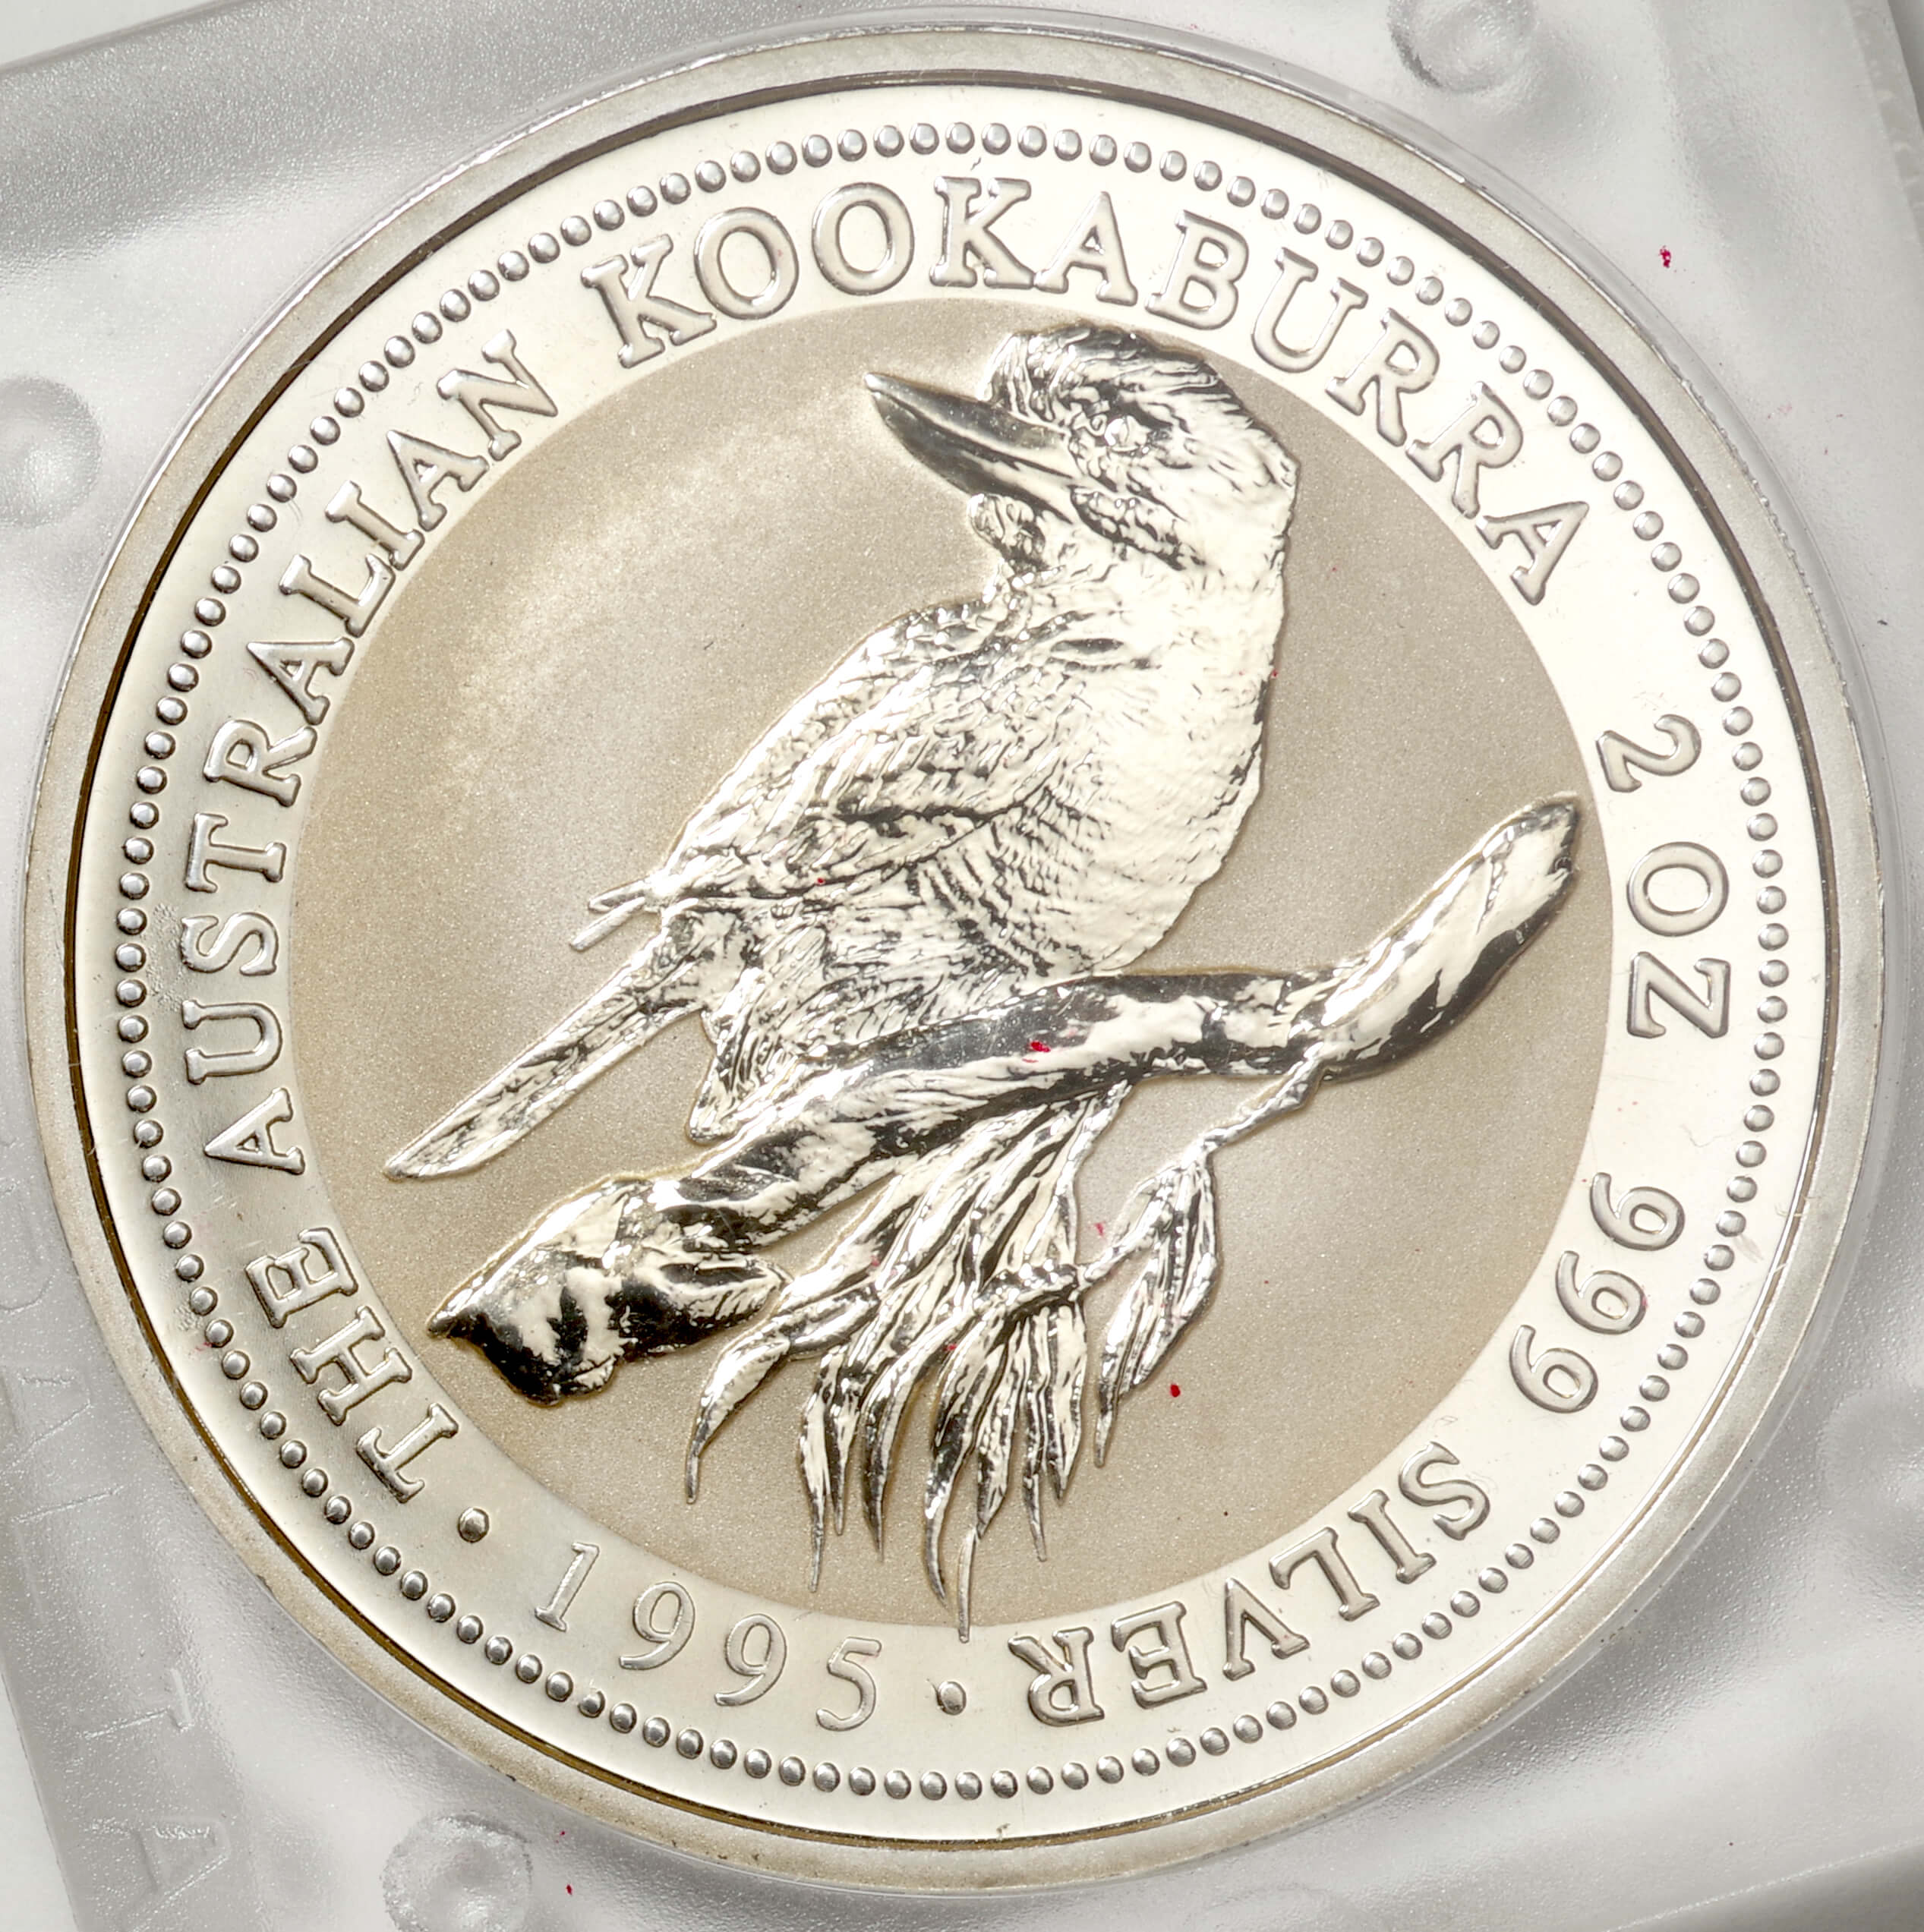 オーストラリア-Australia. ワライカワセミ 2ドル(2オンス)銀貨 1995年 